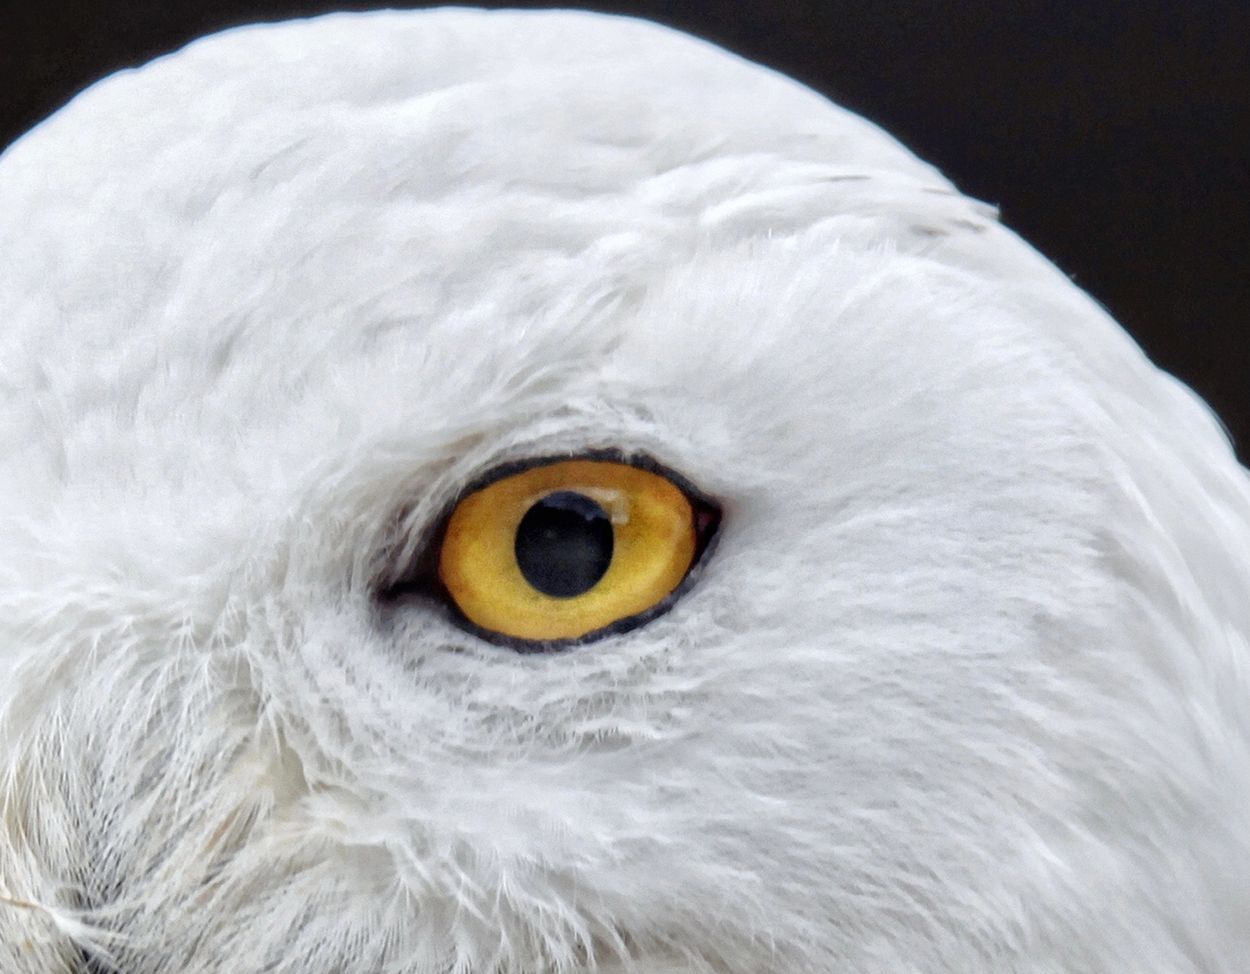 White owl
Eye of white owl
Gold eye of white owl